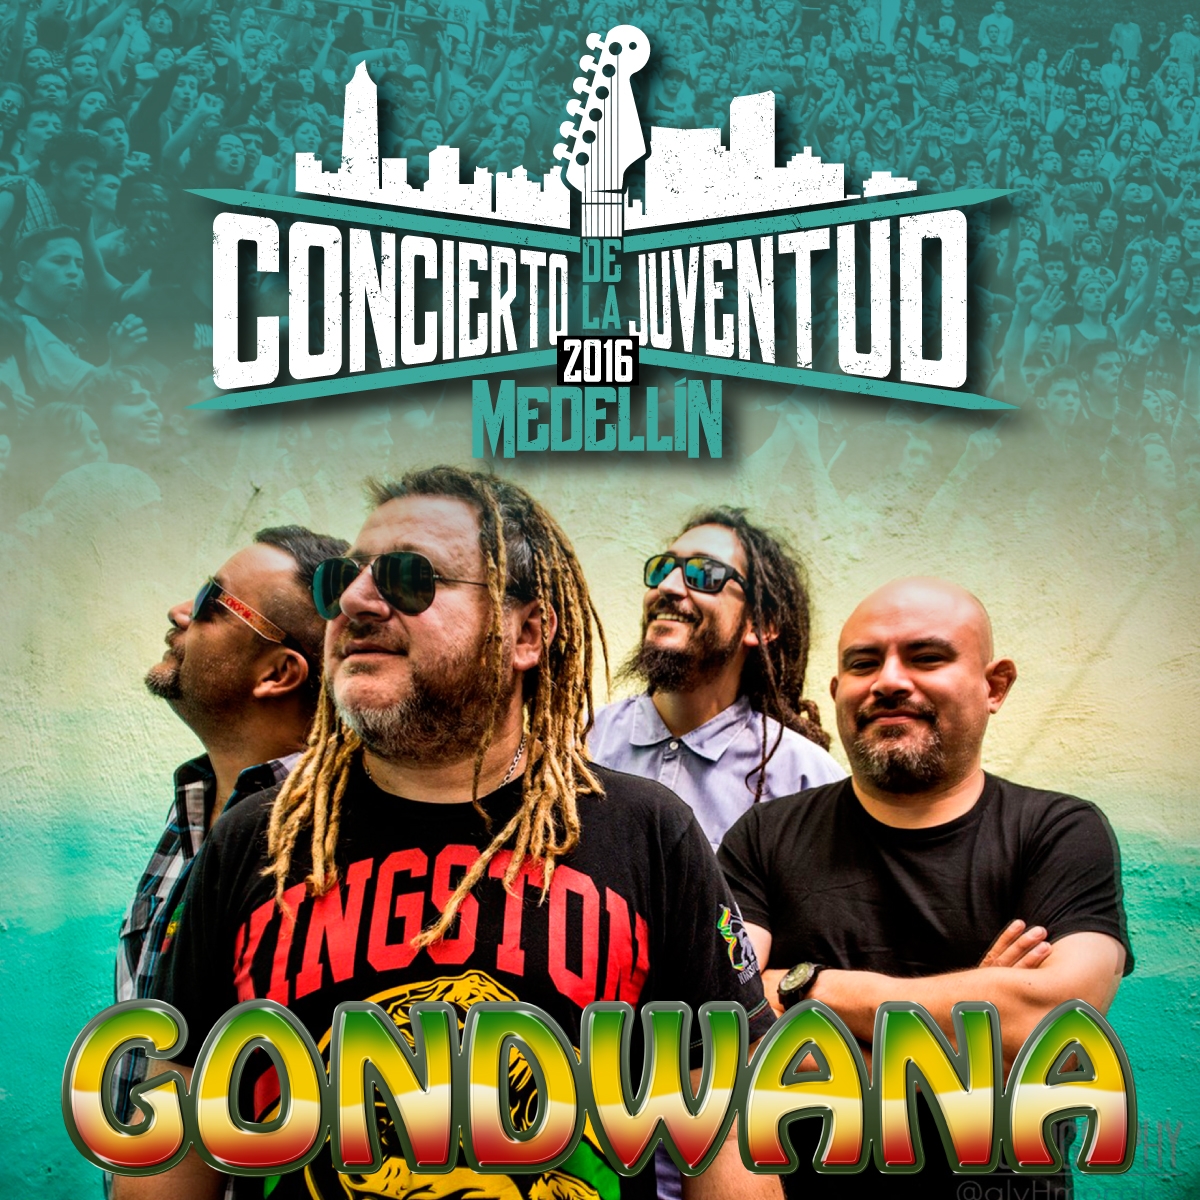 Los pericos cancelan show y son reemplazados por Gondwana #ConciertodelaJuventud2016